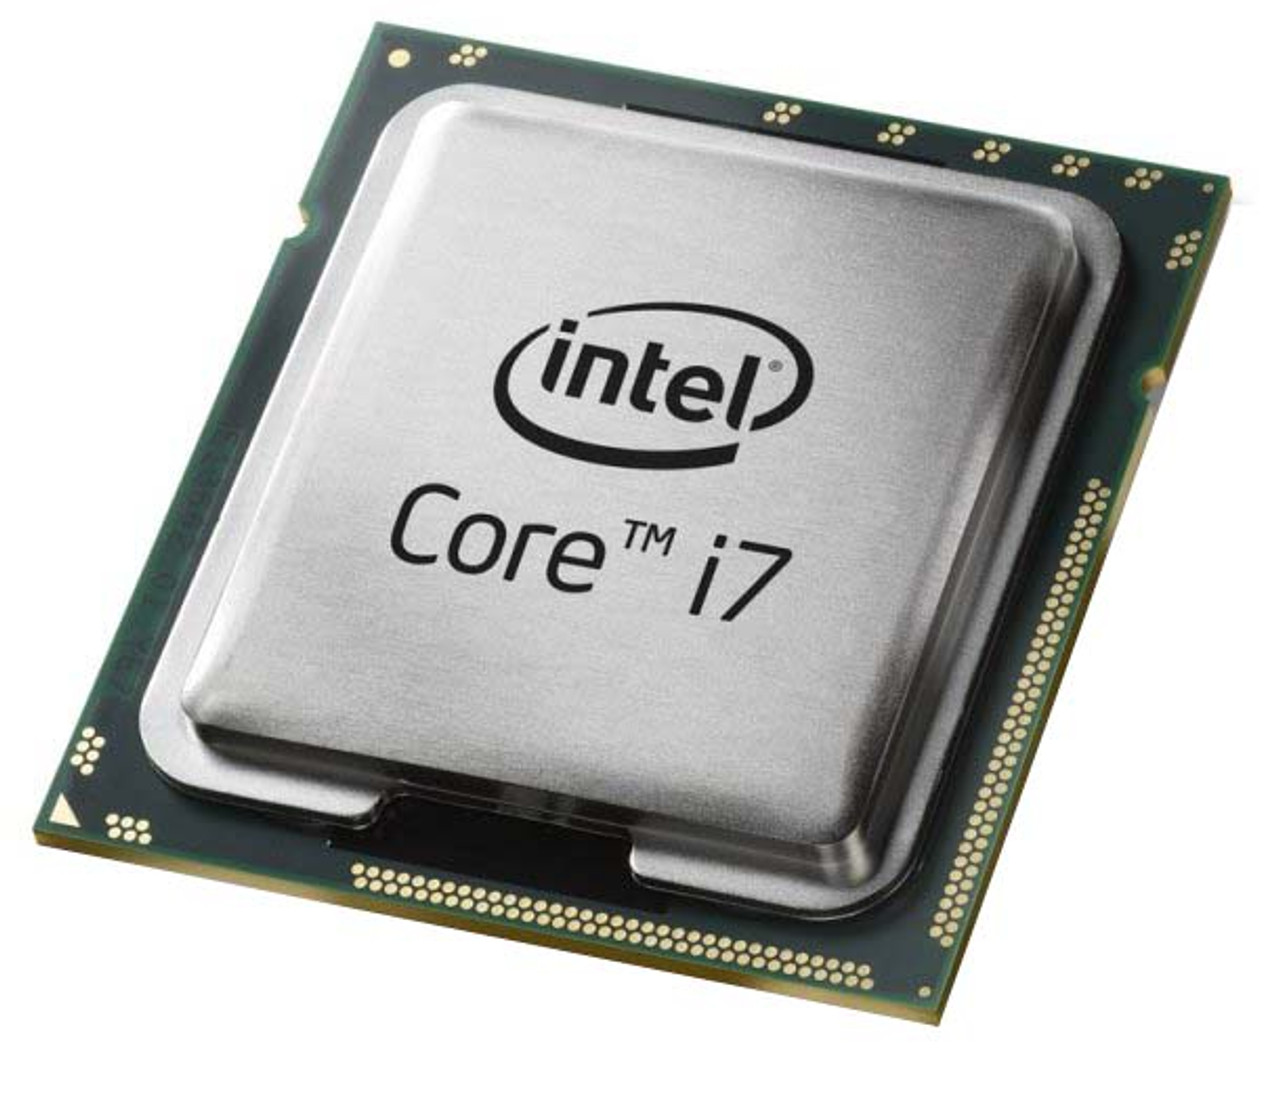 I7-720QM - Intel Core i7-720QM Quad Core 1.60GHz 2.50GT/s DMI 6MB L3 Cache Mobile Processor